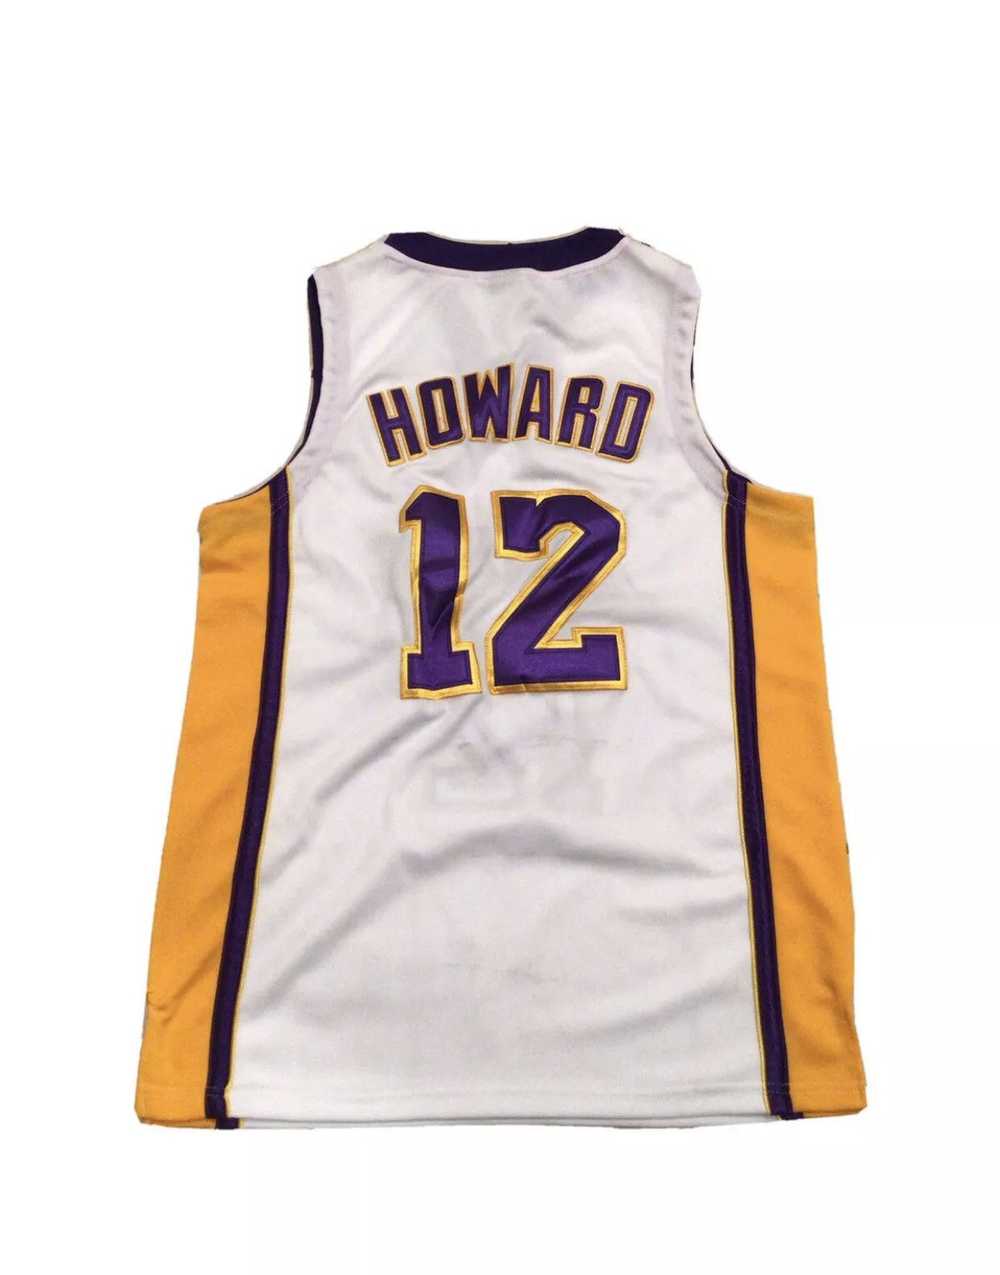 Adidas × L.A. Lakers × NBA Adidas Dwight Howard S… - image 2